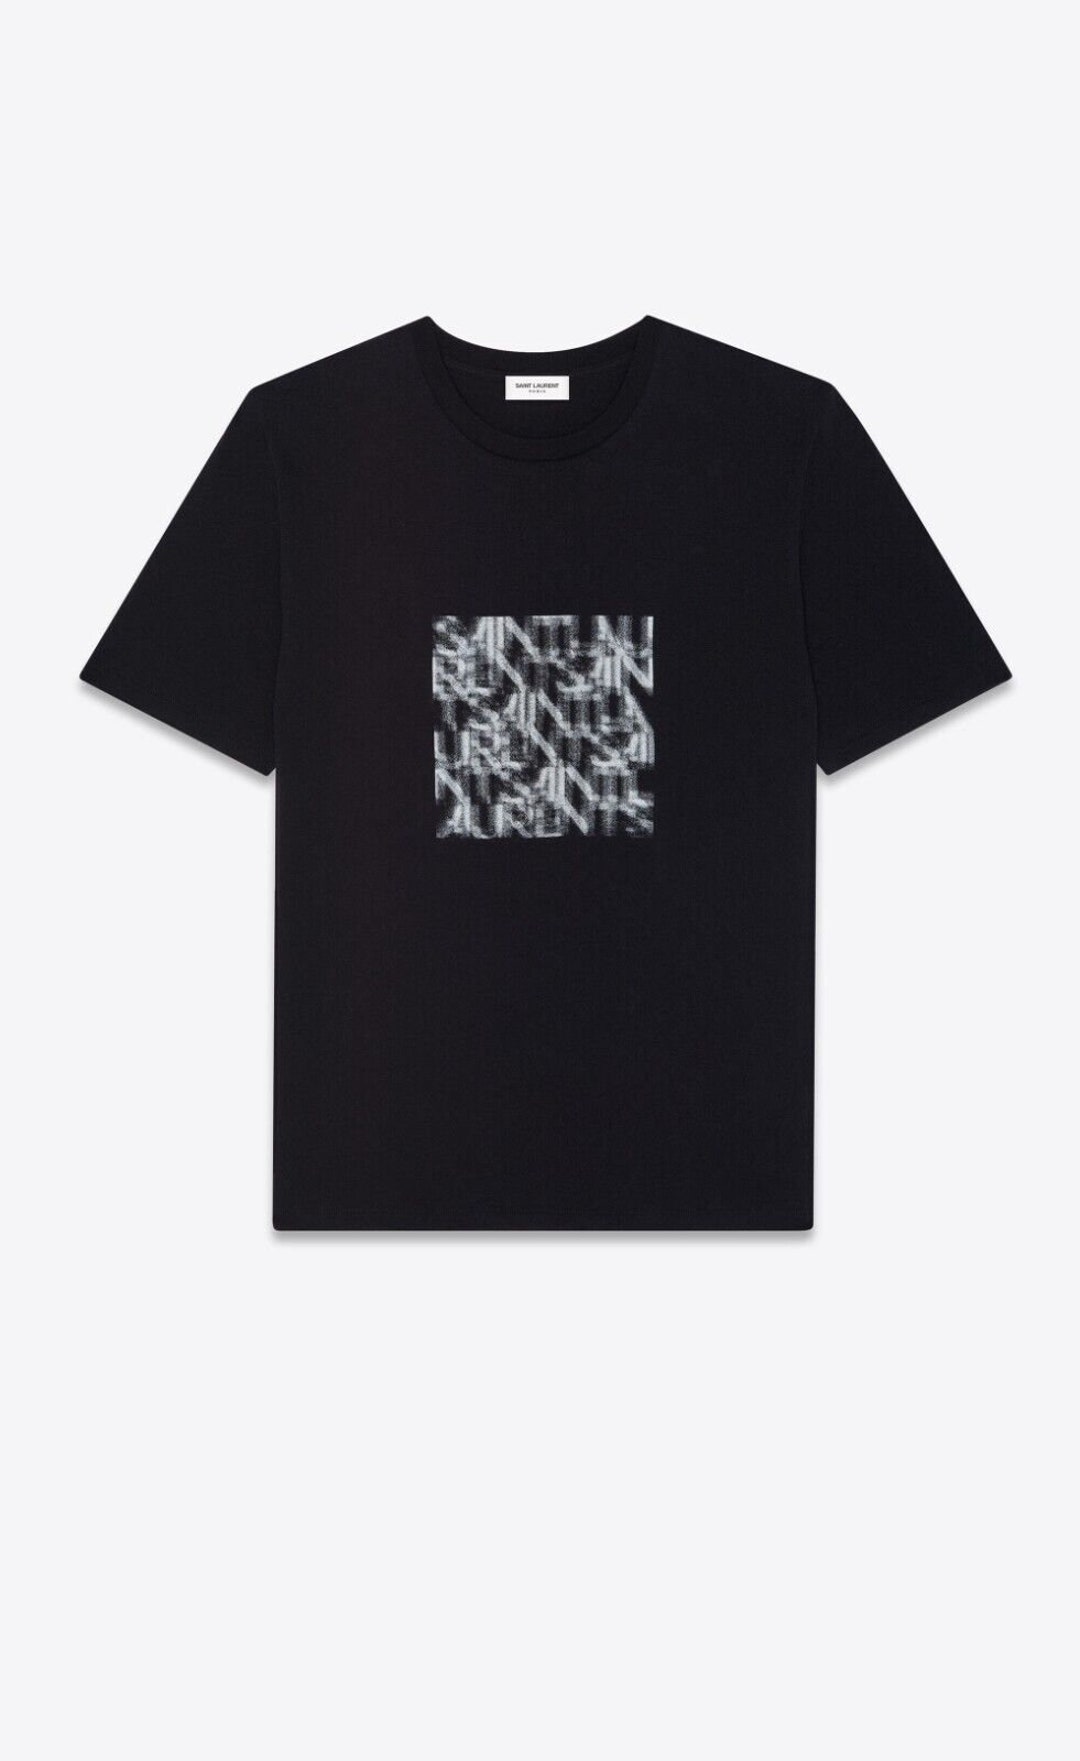 Saint Laurent Paris Optical Illusion T-shirt Black Size L Black & Chalk ...